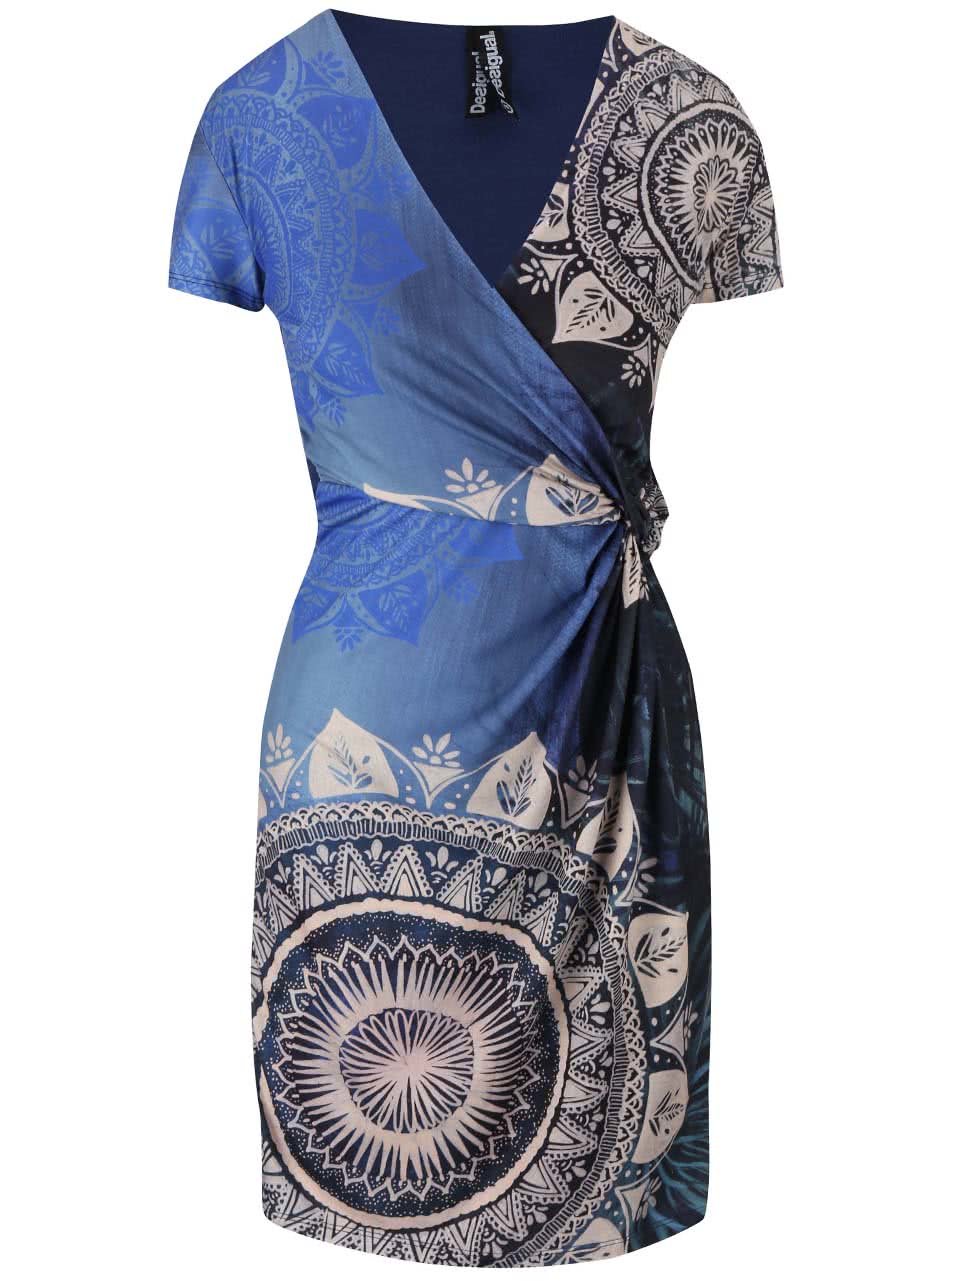 Modré šaty s překládaným dekoltem Desigual Clemente